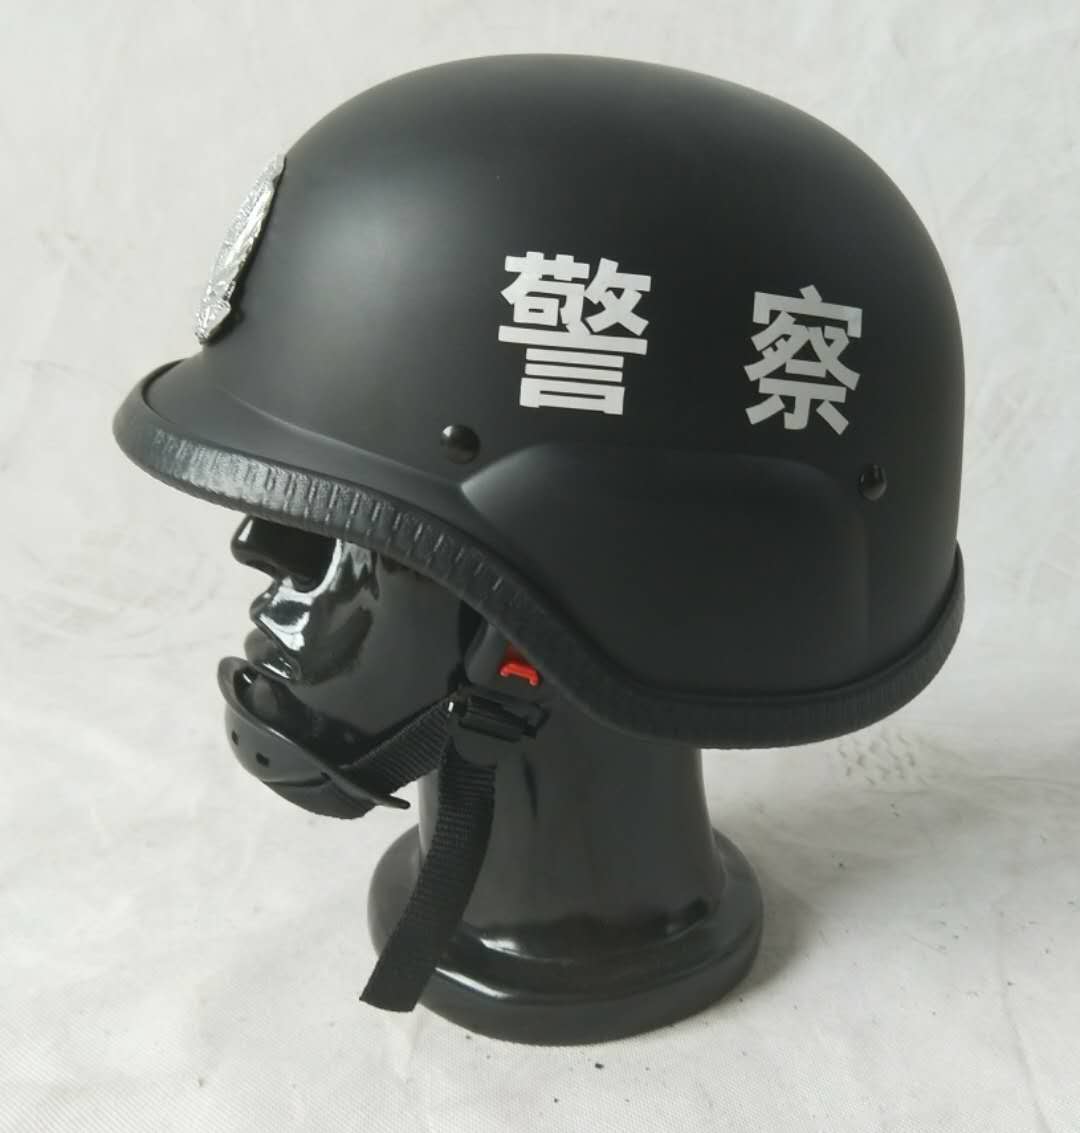 German helmet